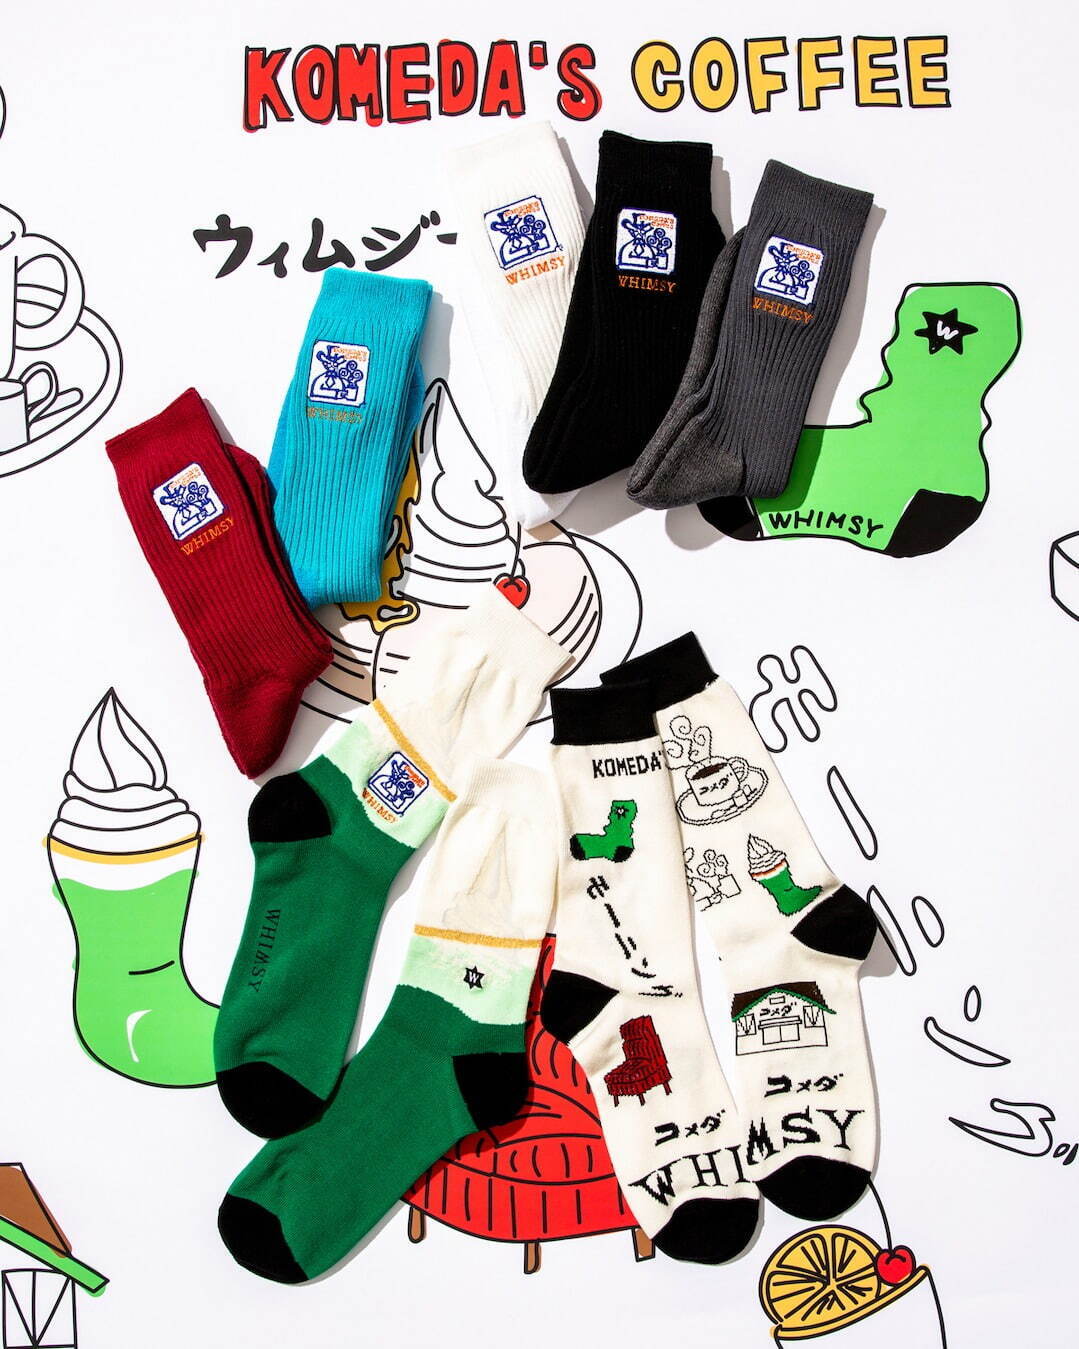 (上)Komeda Emjay Socks 2,420円(税込)
(下・左)Cream Soda Socks 2,420円(税込)